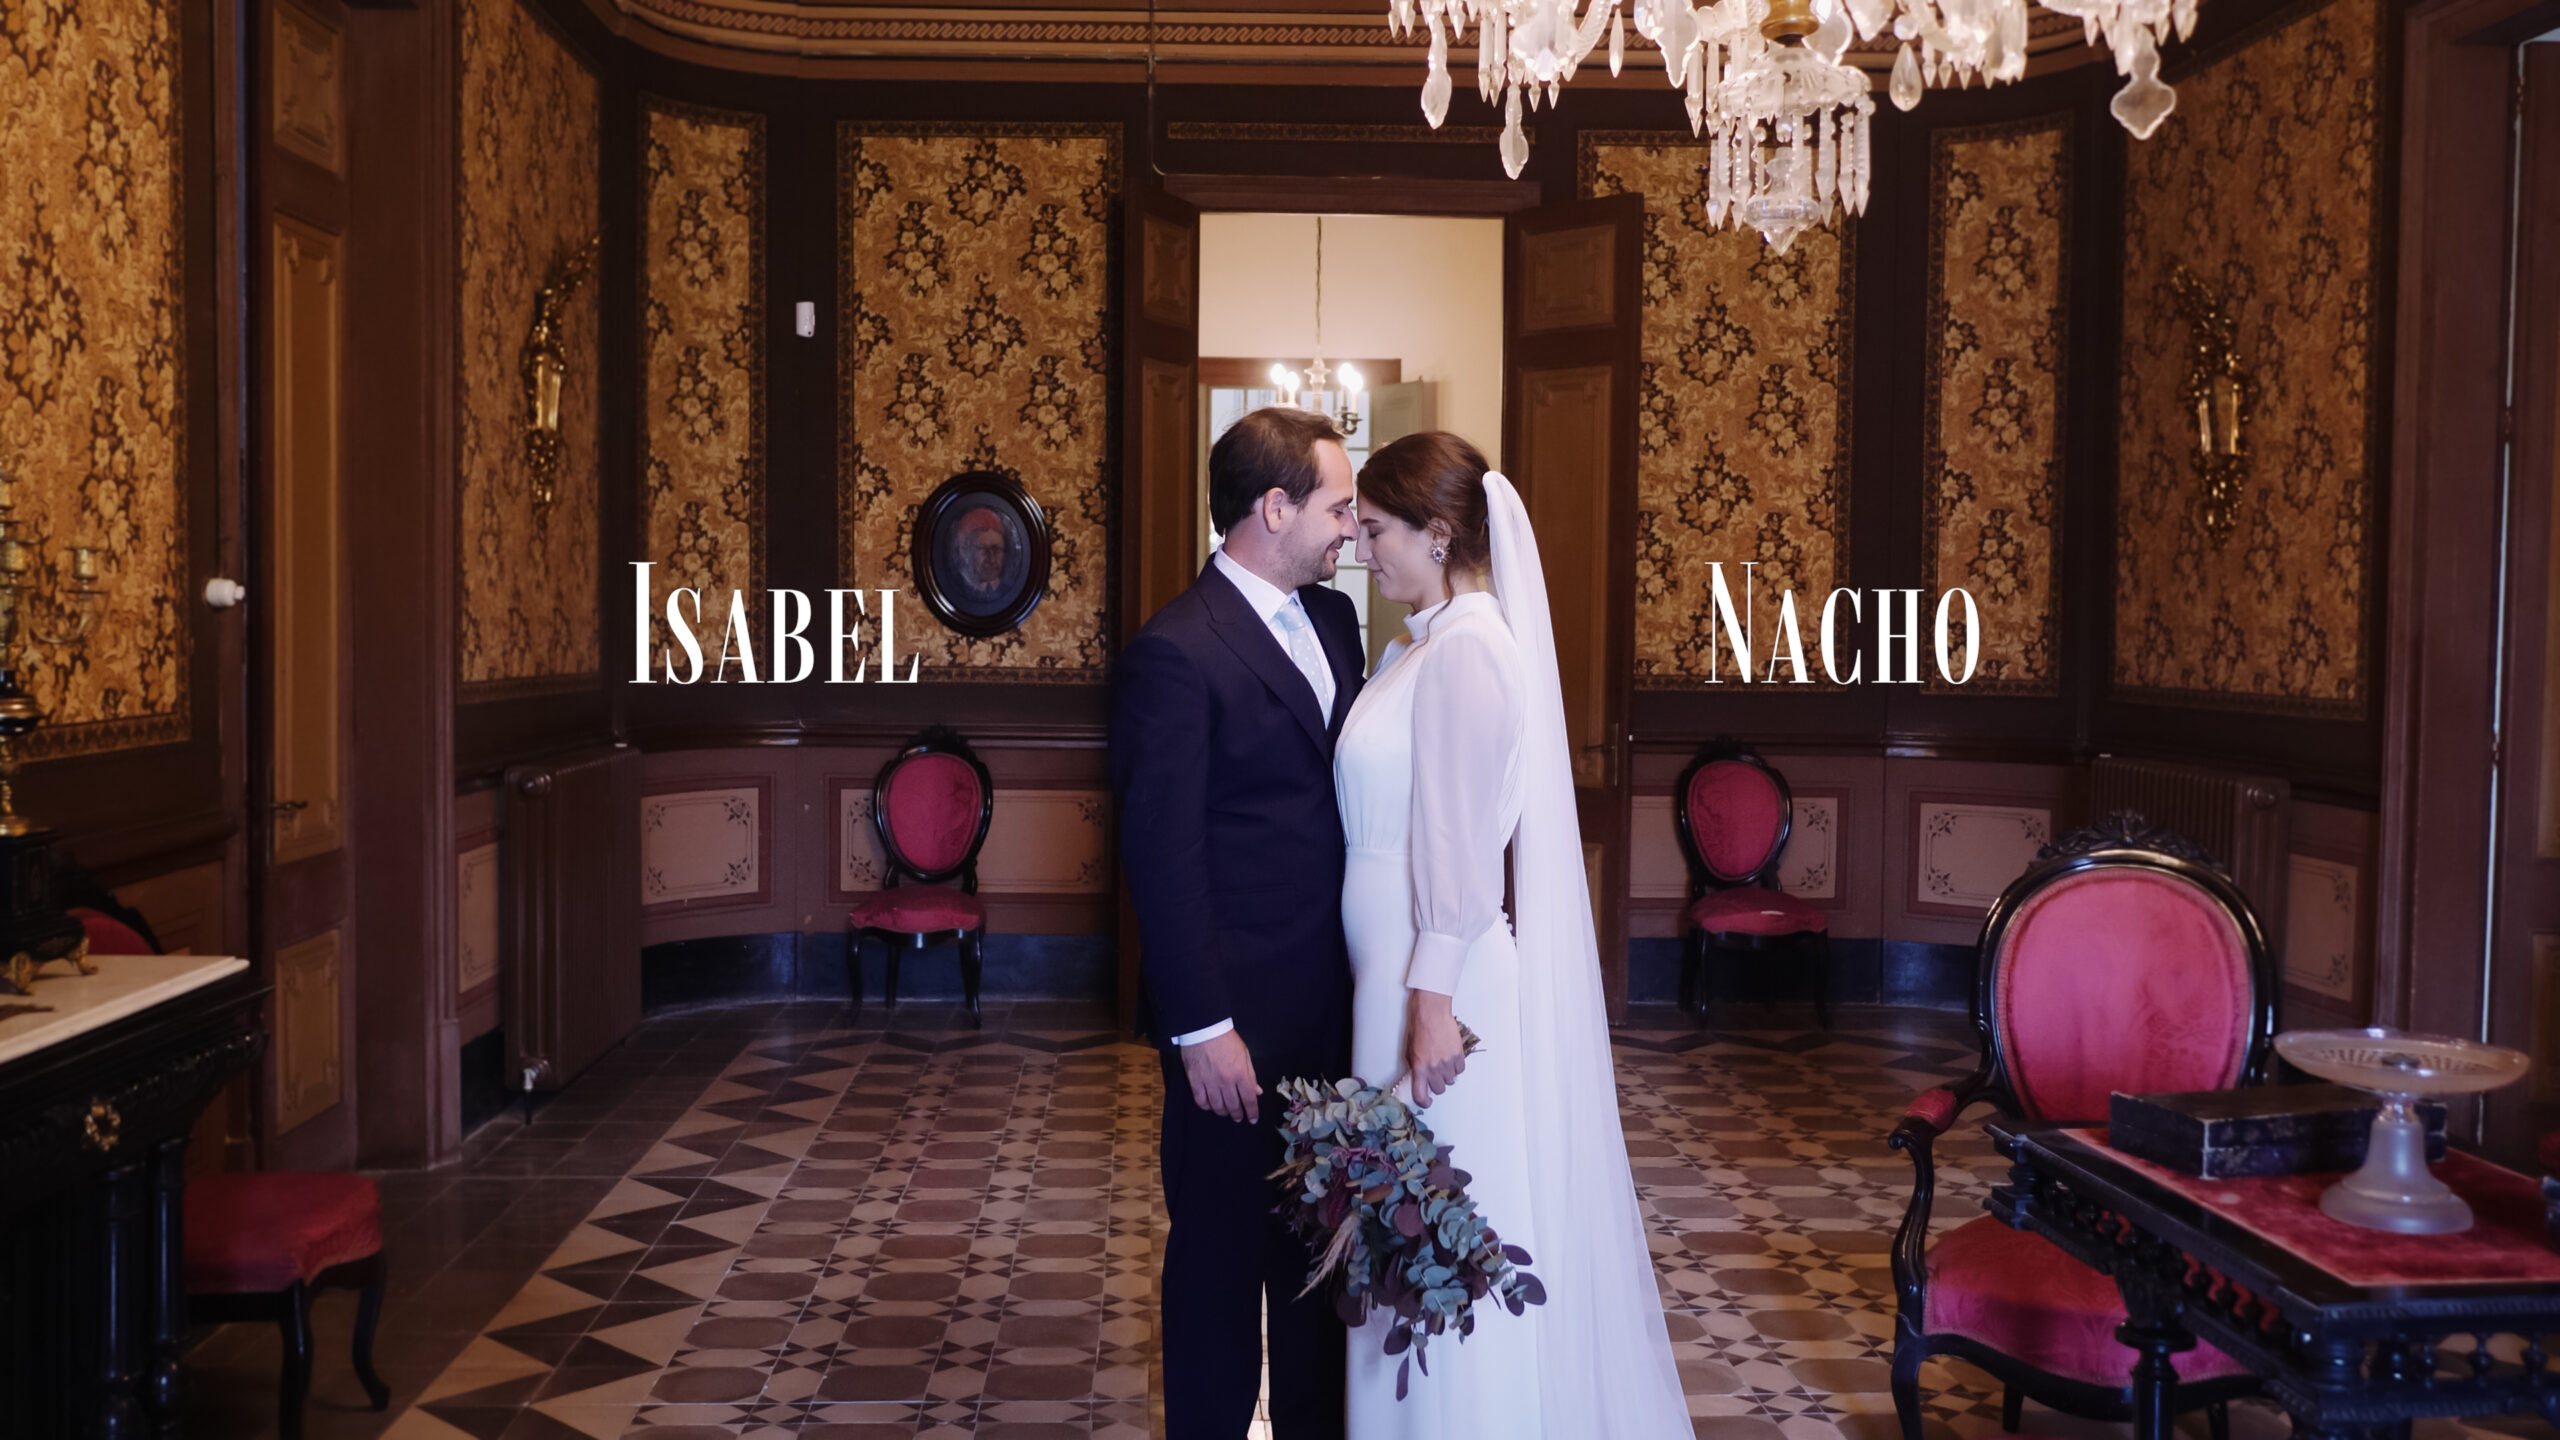 Pareja de novios en el salón de un palacio, compartiendo un momento romántico en su elegante boda bajo arañas de cristal. En la La Torre de Can Parellada, Barcelona